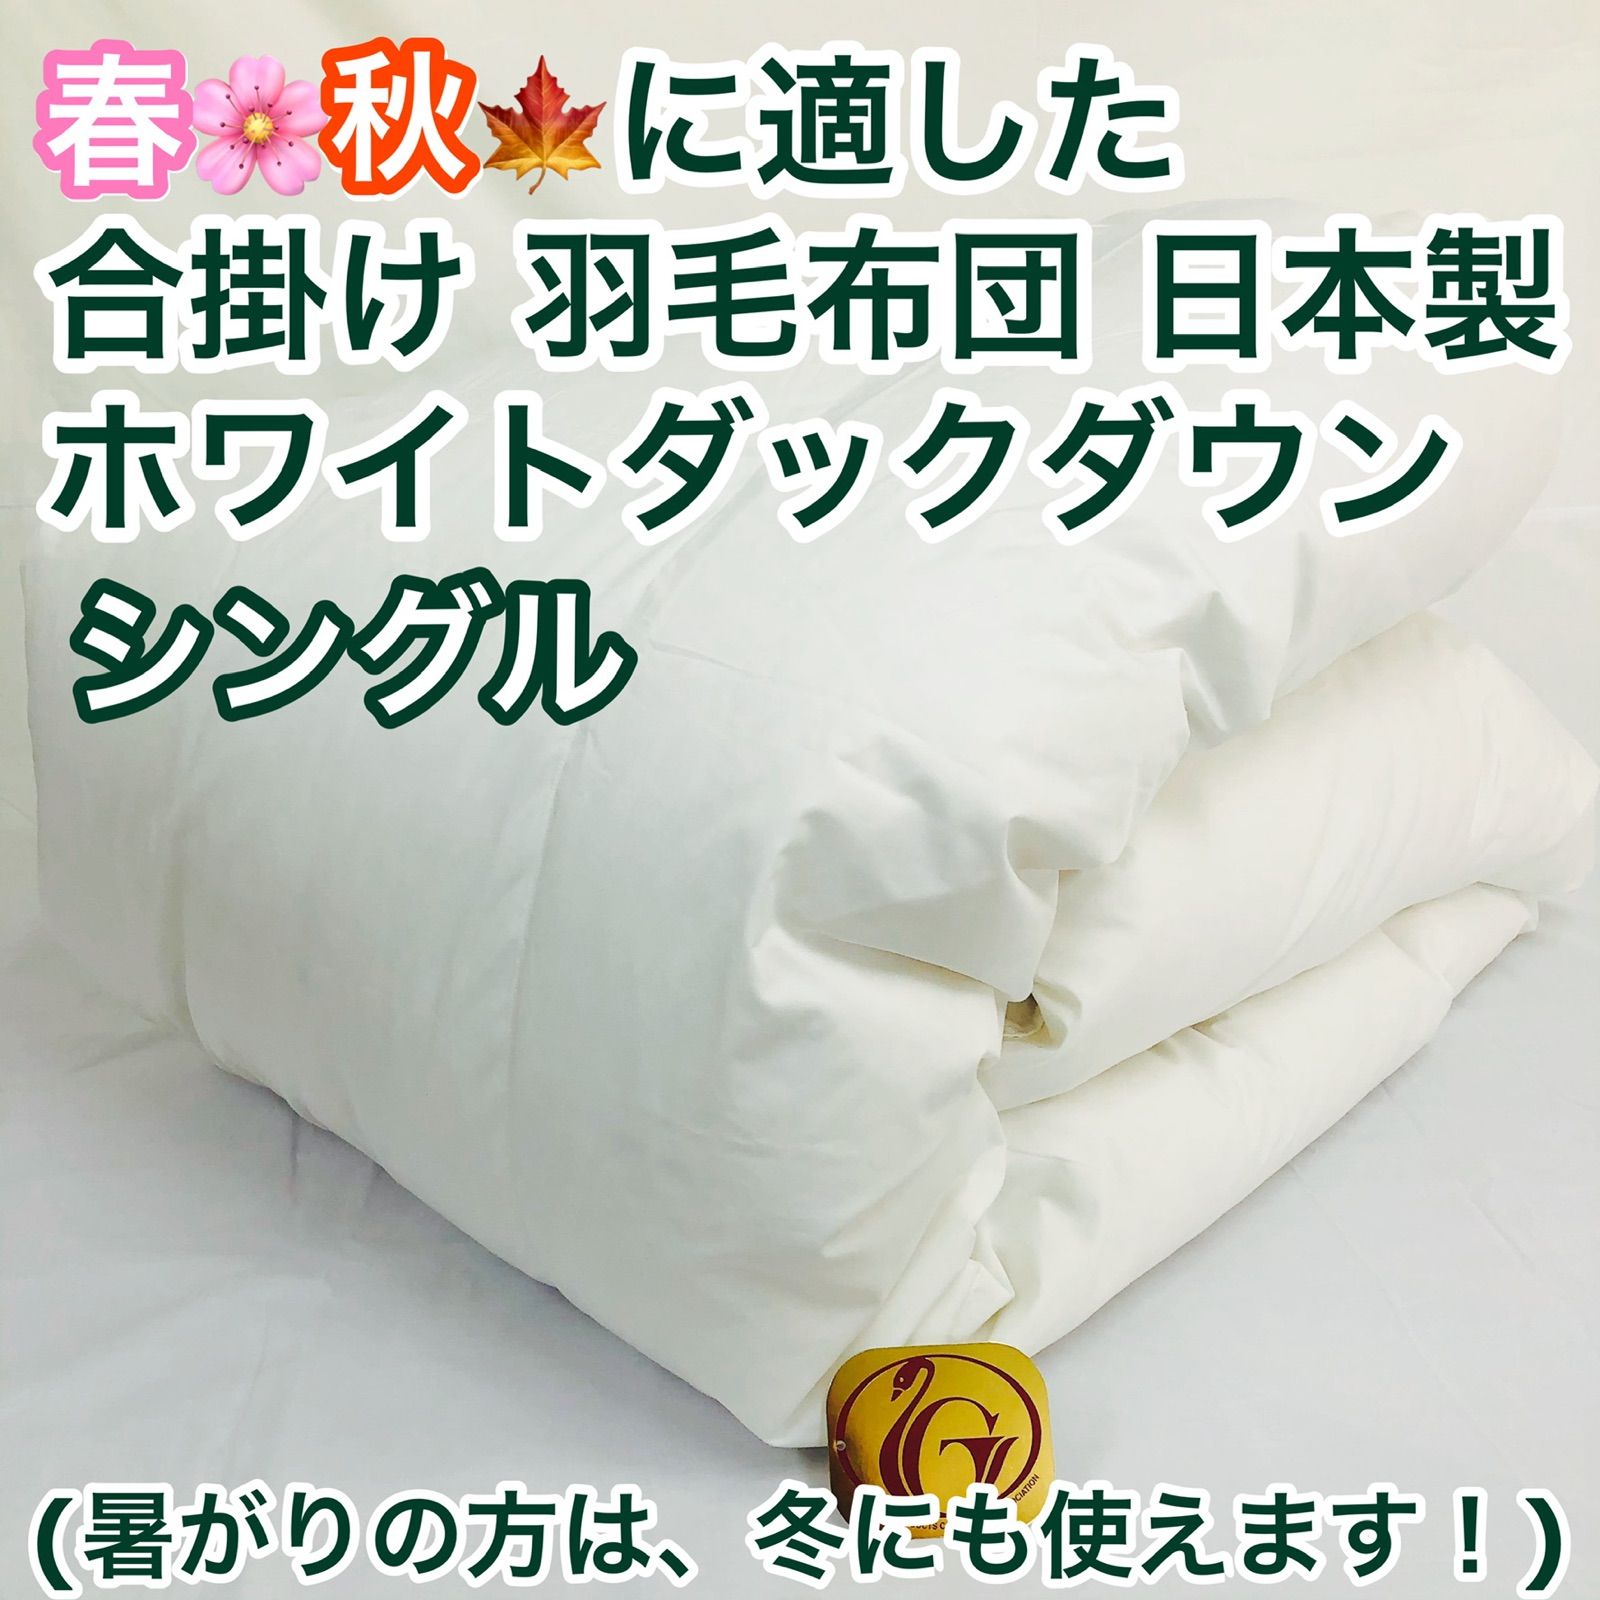 合掛け 羽毛布団 シングル ニューゴールドラベル 日本製 春 秋 用 - メルカリ